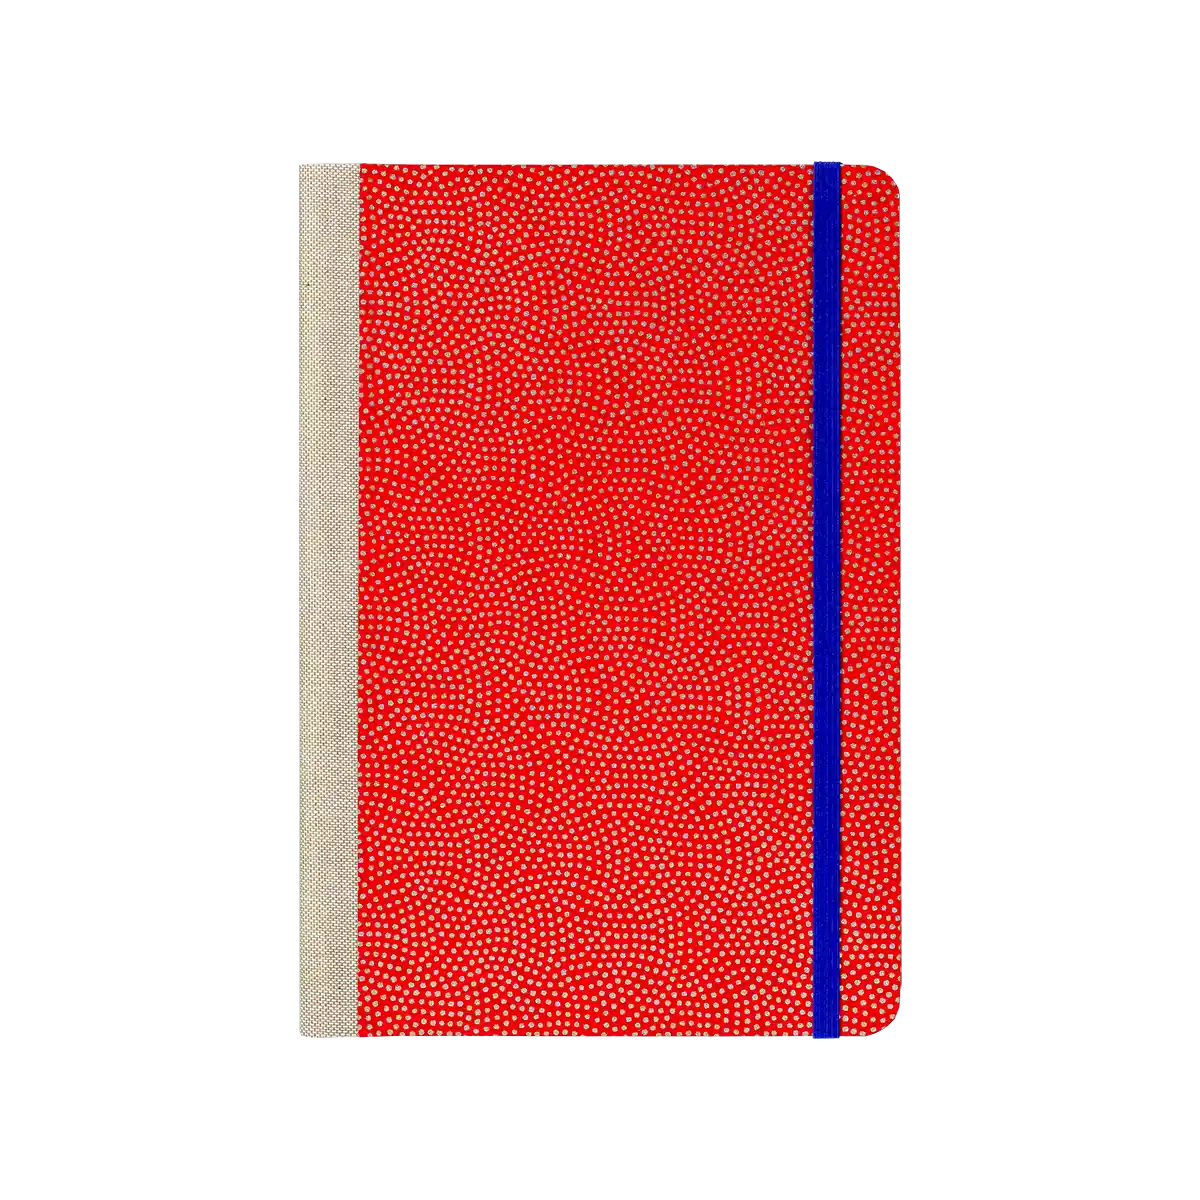 Notizbuch / 240 Seiten / A5  / liniert / Same Komon silber auf rot